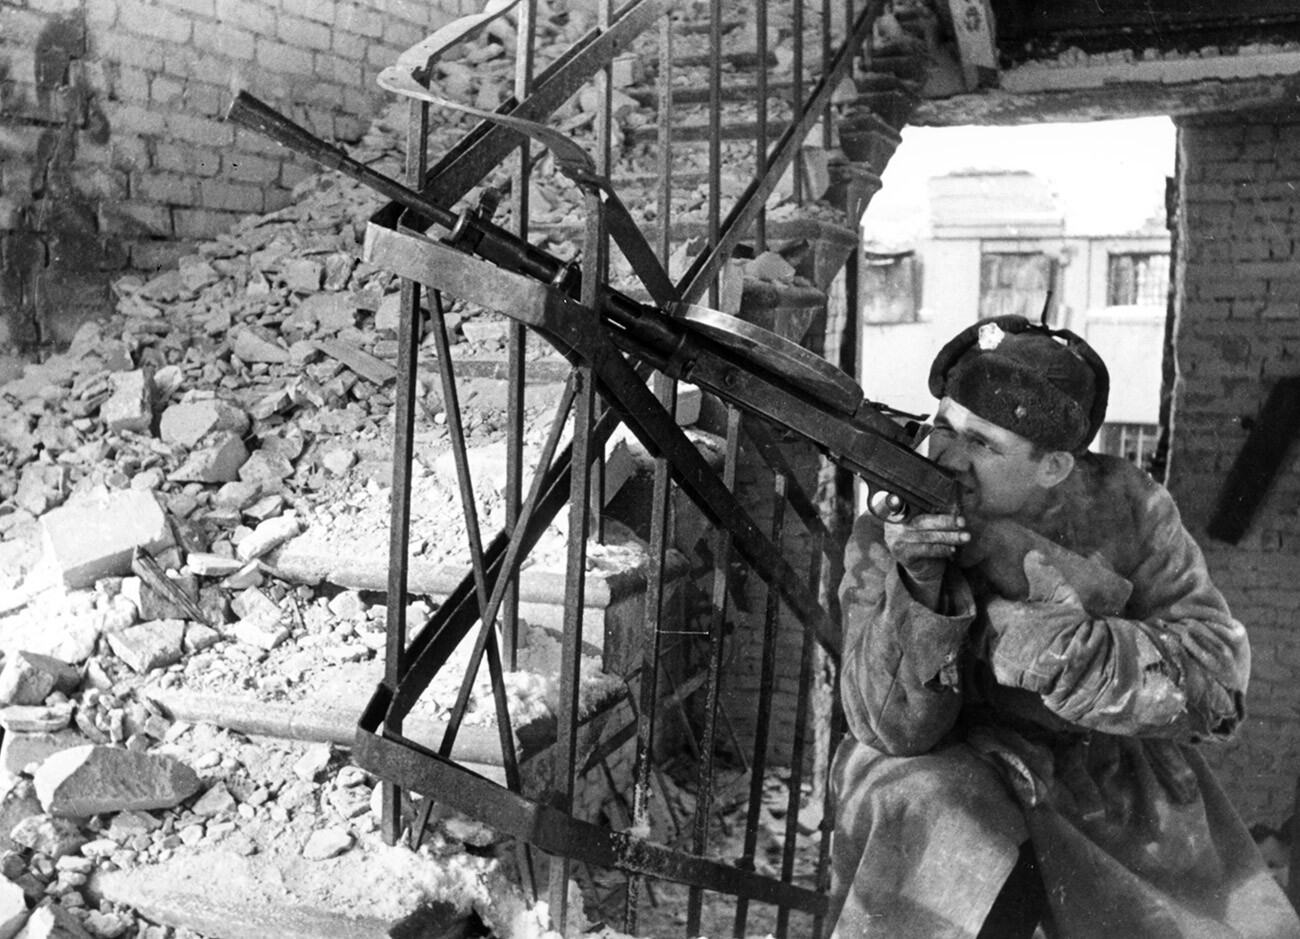 Sowjetischer Soldat in Stalingrad.
